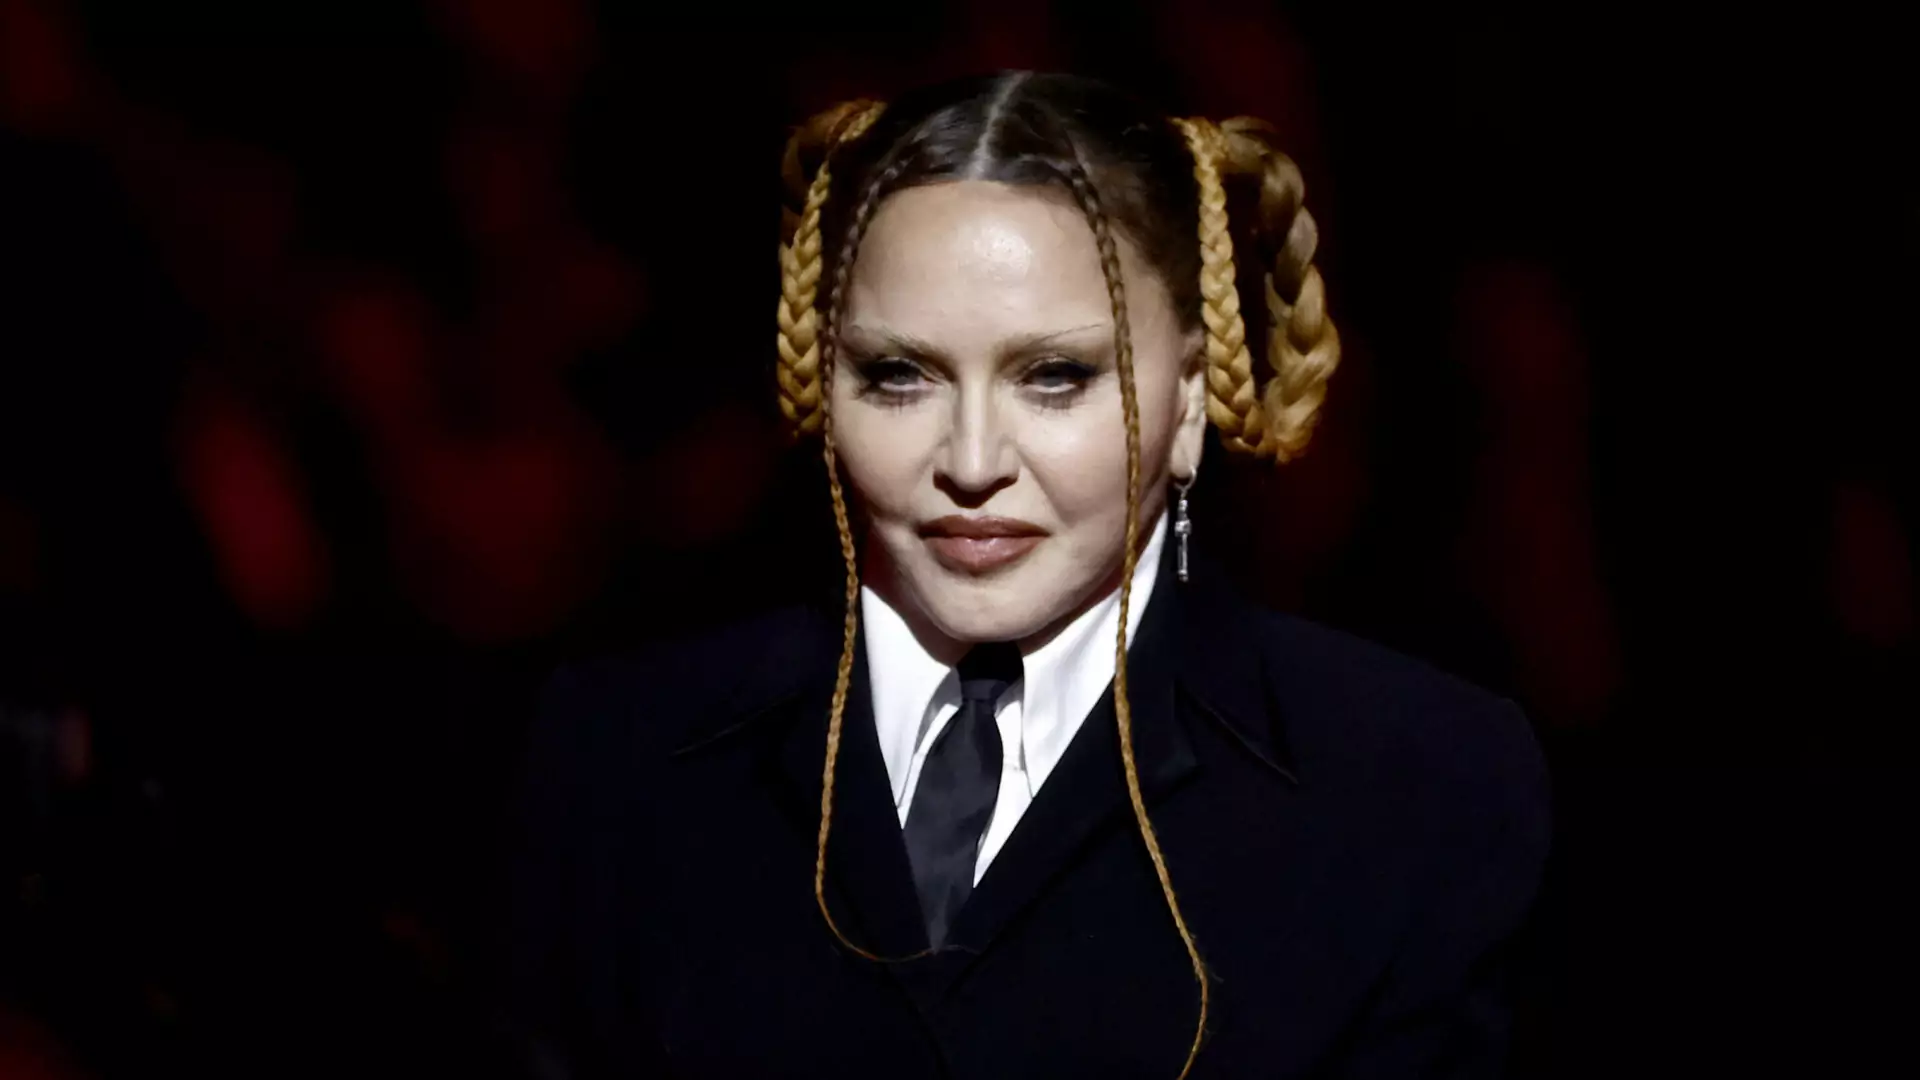 Madonna skrytykowana za swój wygląd. "Nie mam zamiaru przepraszać"